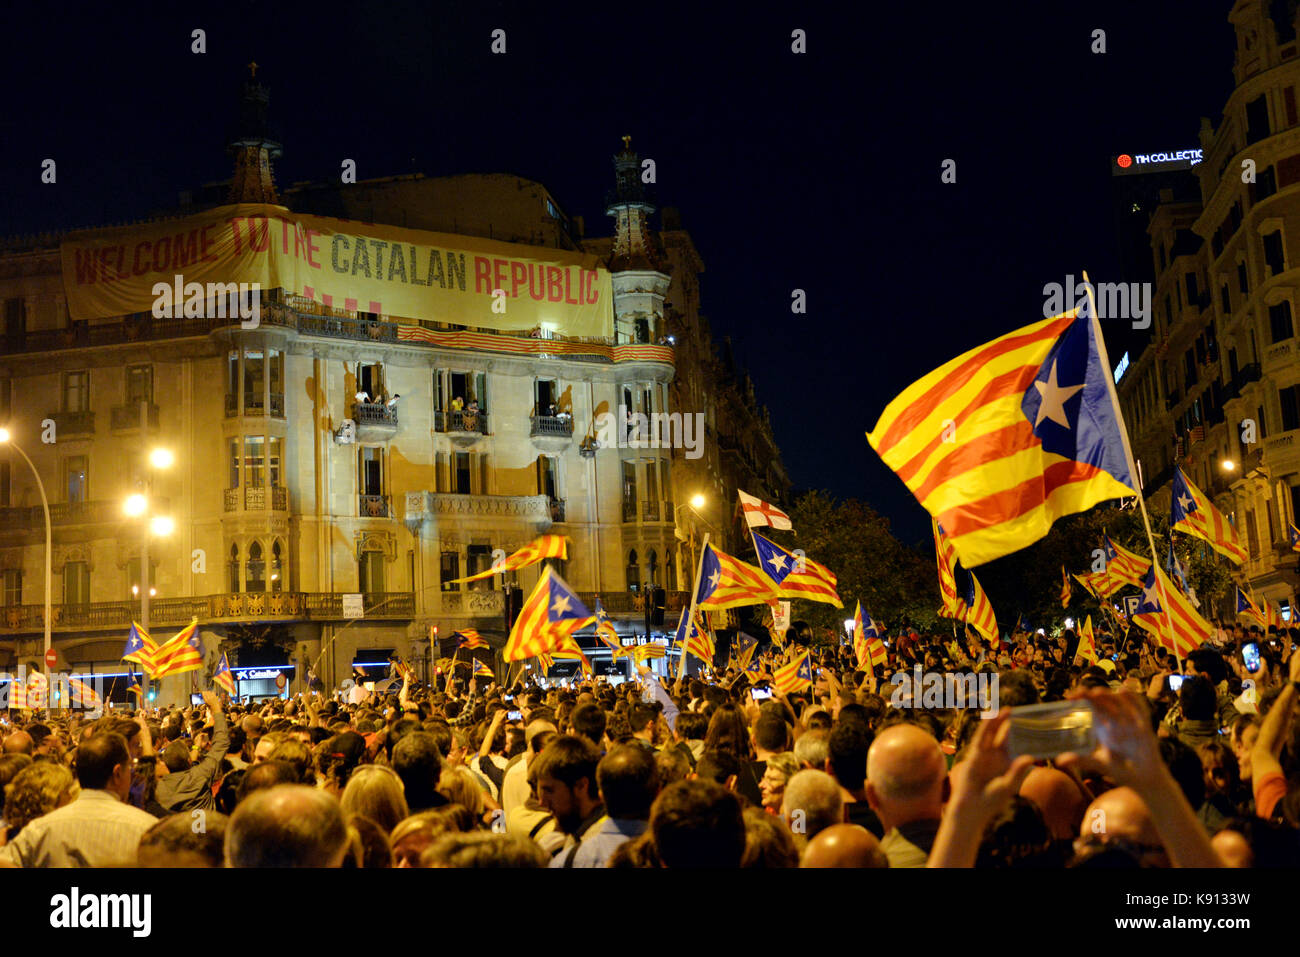 Barcelone, Espagne. 20 sep, 2017. personnes vague indépendantiste catalan drapeaux dans la Rambla Catalunya, dans une concentration pour protester contre la détention de 14 hauts fonctionnaires dans le cadre d'une opération pour arrêter le référendum ait lieu le 1er octobre. crédit : laia ros padulles/Alamy live news Banque D'Images